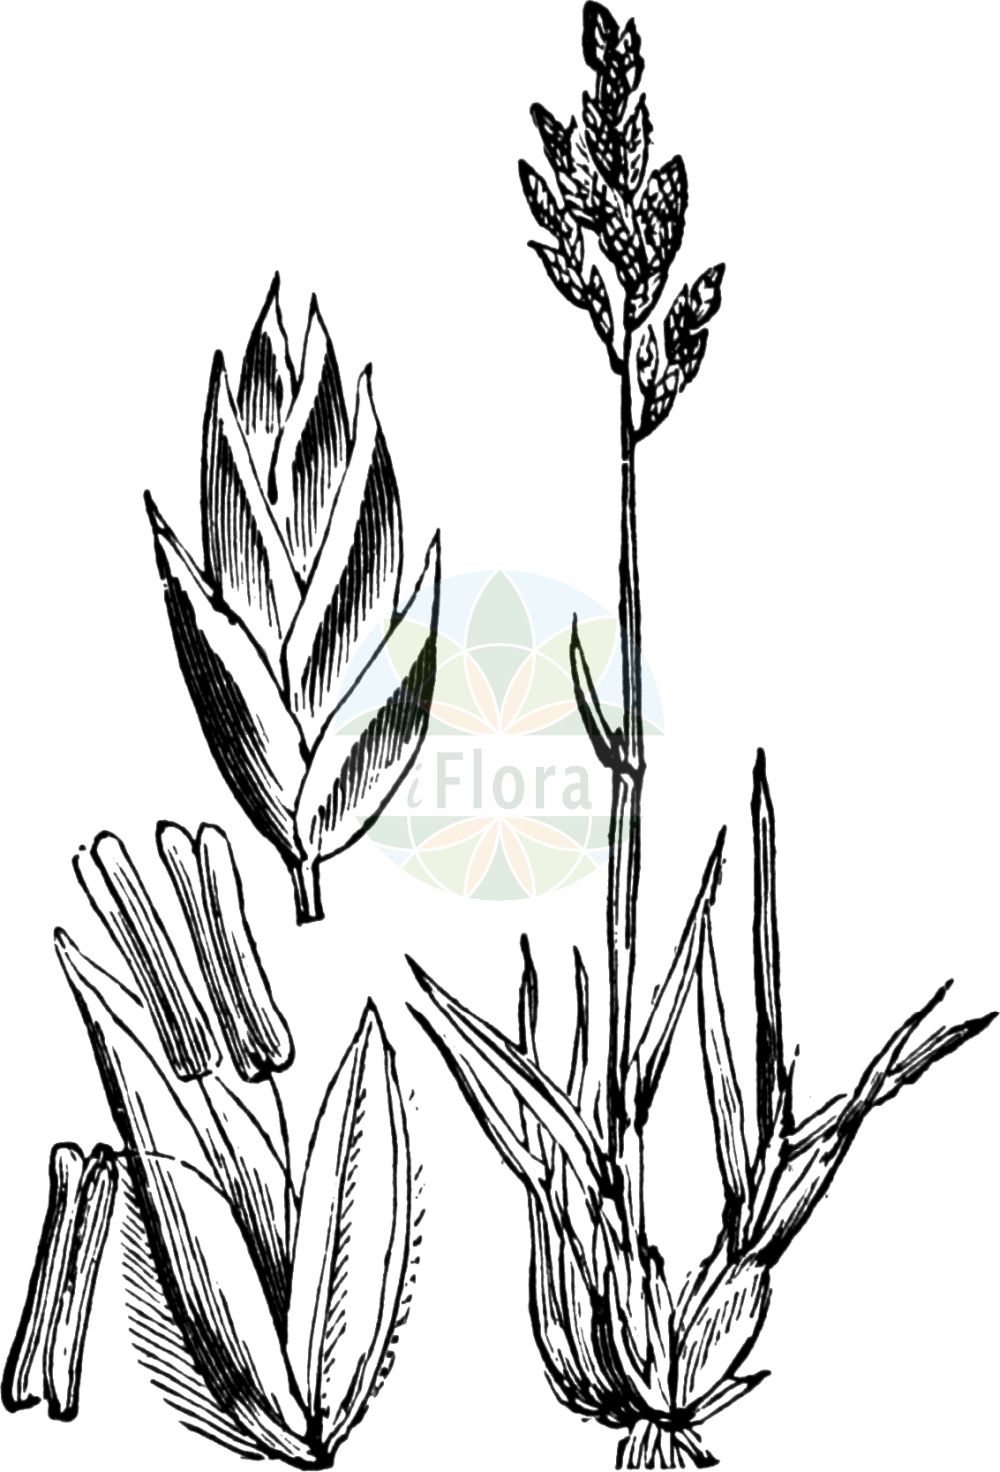 Historische Abbildung von Poa bulbosa (Zwiebel-Rispengras - Bulbous Meadow-grass). Das Bild zeigt Blatt, Bluete, Frucht und Same. ---- Historical Drawing of Poa bulbosa (Zwiebel-Rispengras - Bulbous Meadow-grass). The image is showing leaf, flower, fruit and seed.(Poa bulbosa,Zwiebel-Rispengras,Bulbous Meadow-grass,Poa crispa,Poa bulbosa,Zwiebel-Rispengras,Bulbous Meadow-grass,Bulbous Bluegrass,Poa,Rispengras,Bluegrass,Poaceae,Süßgräser,Grass family,Blatt,Bluete,Frucht,Same,leaf,flower,fruit,seed,Fitch et al. (1880))